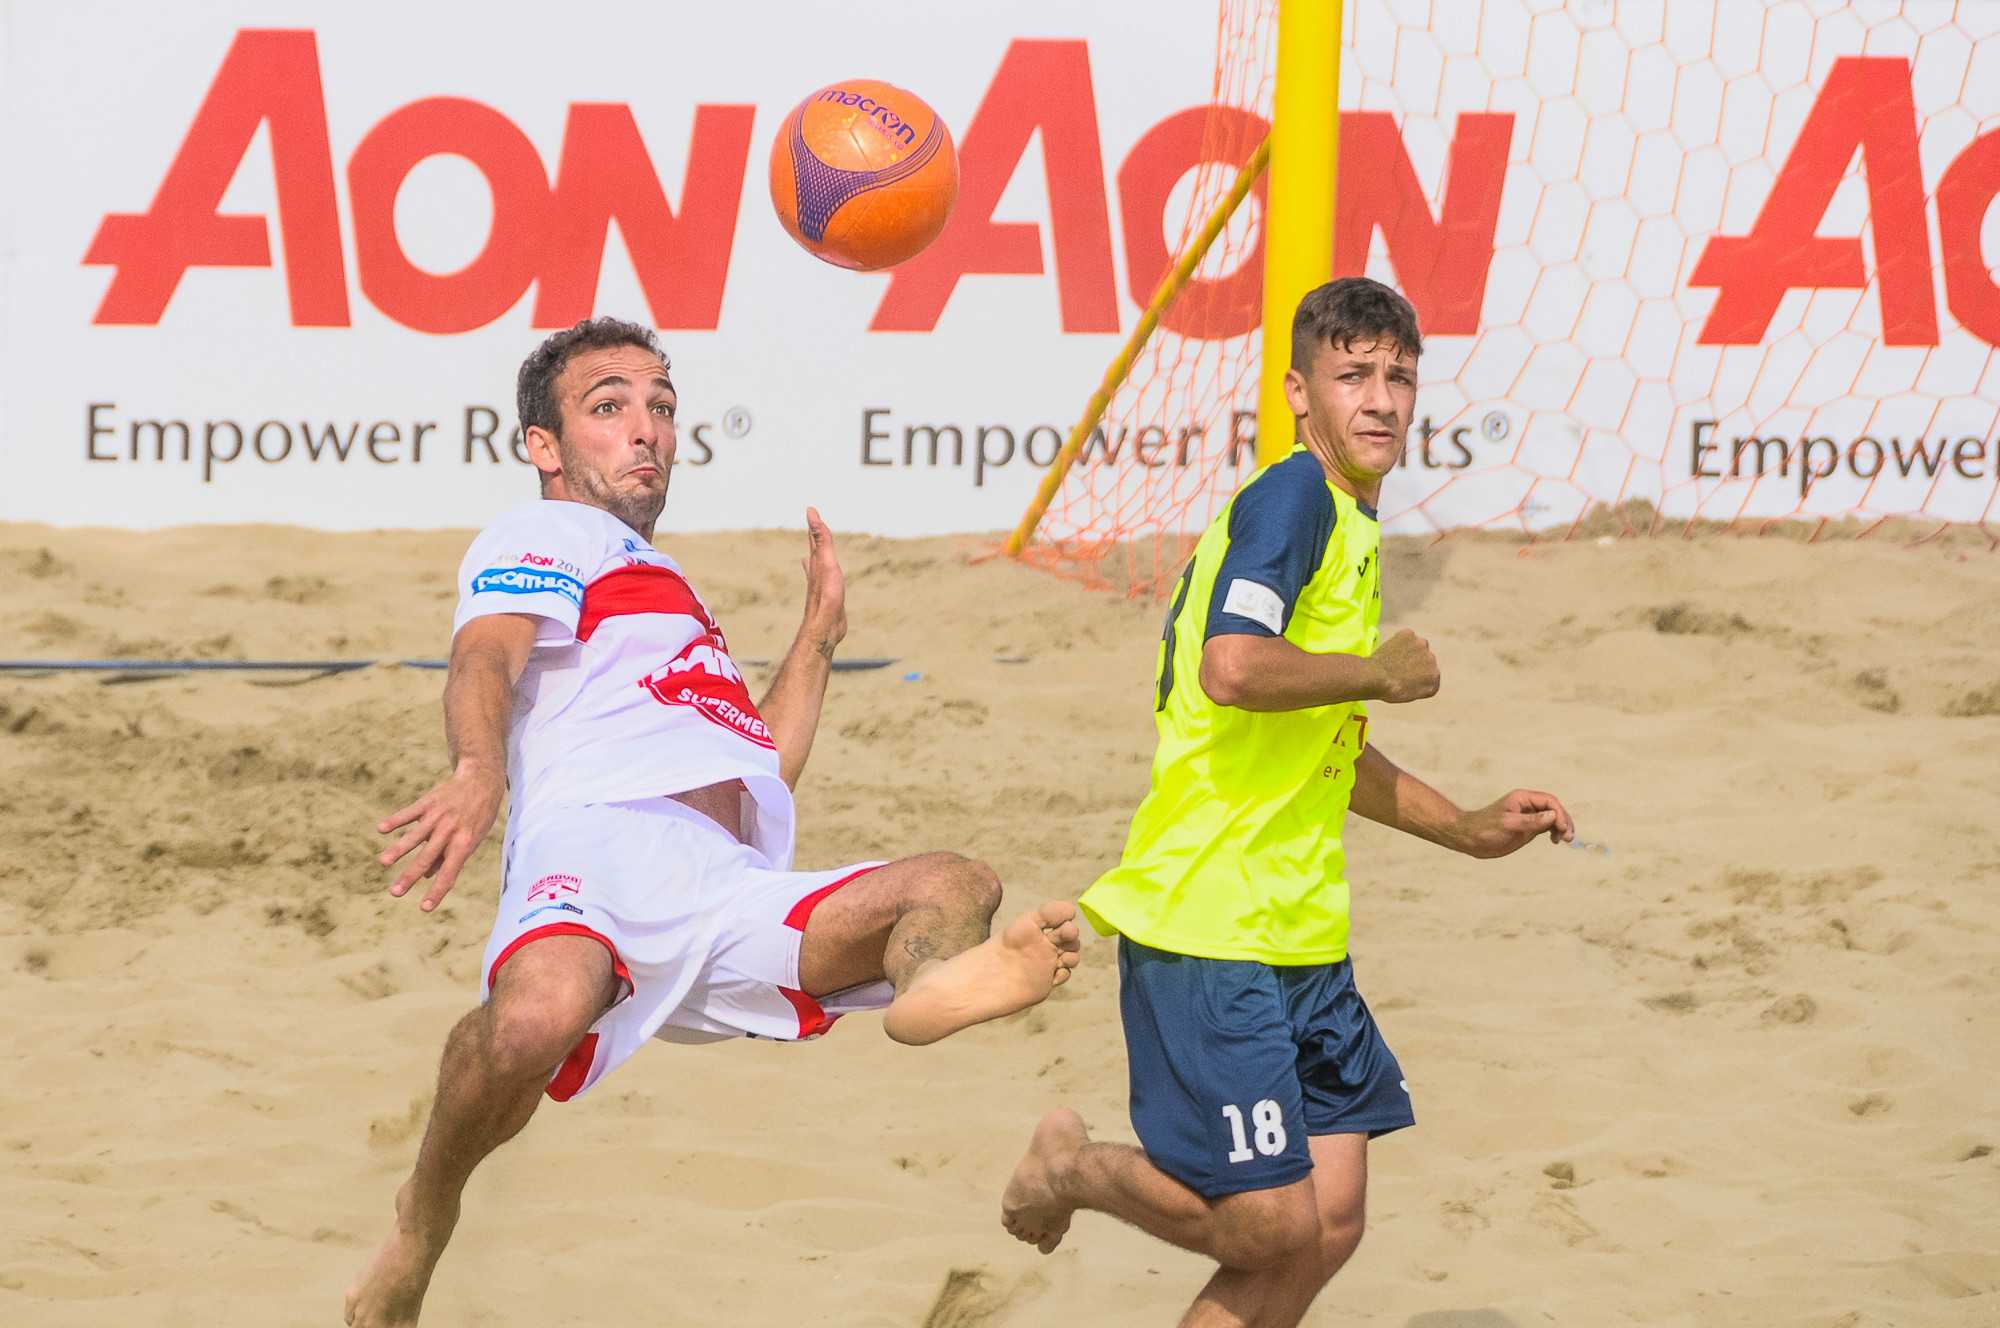 Lignano Sabbiadoro e il Beach Soccer FIGC-Lega Nazionale Dilettanti: da sedici anni sempre in gol